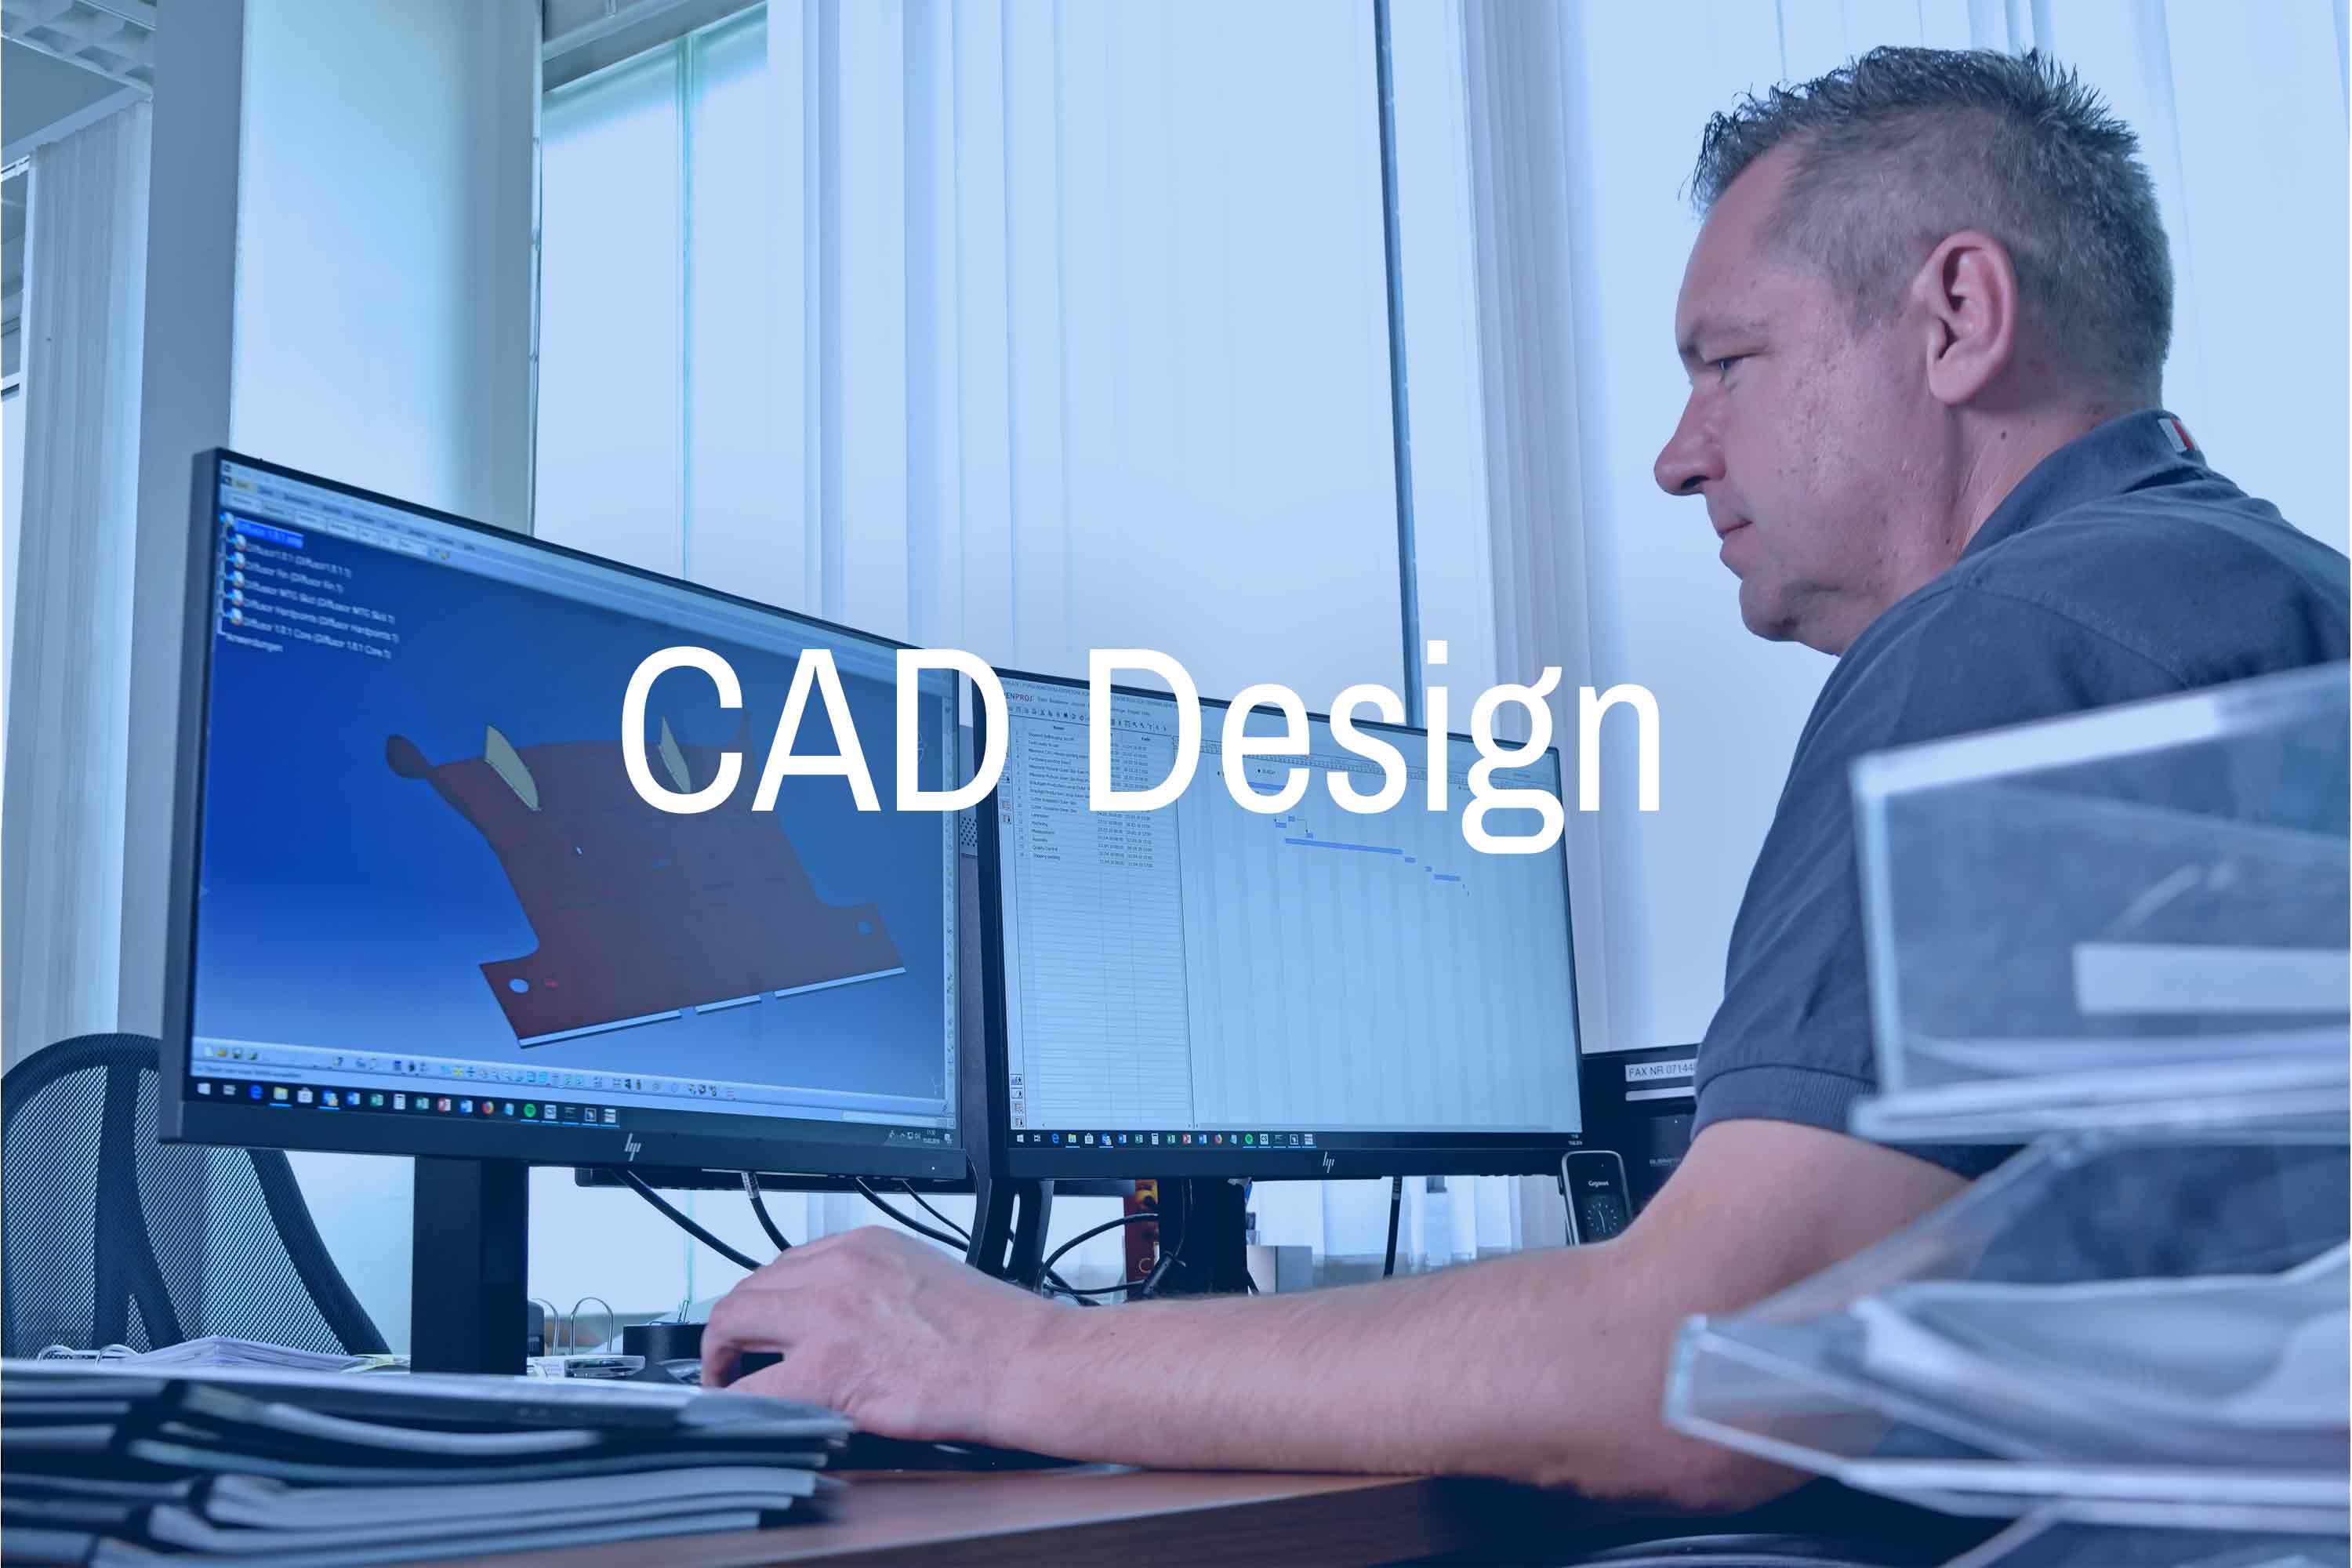 cad-design